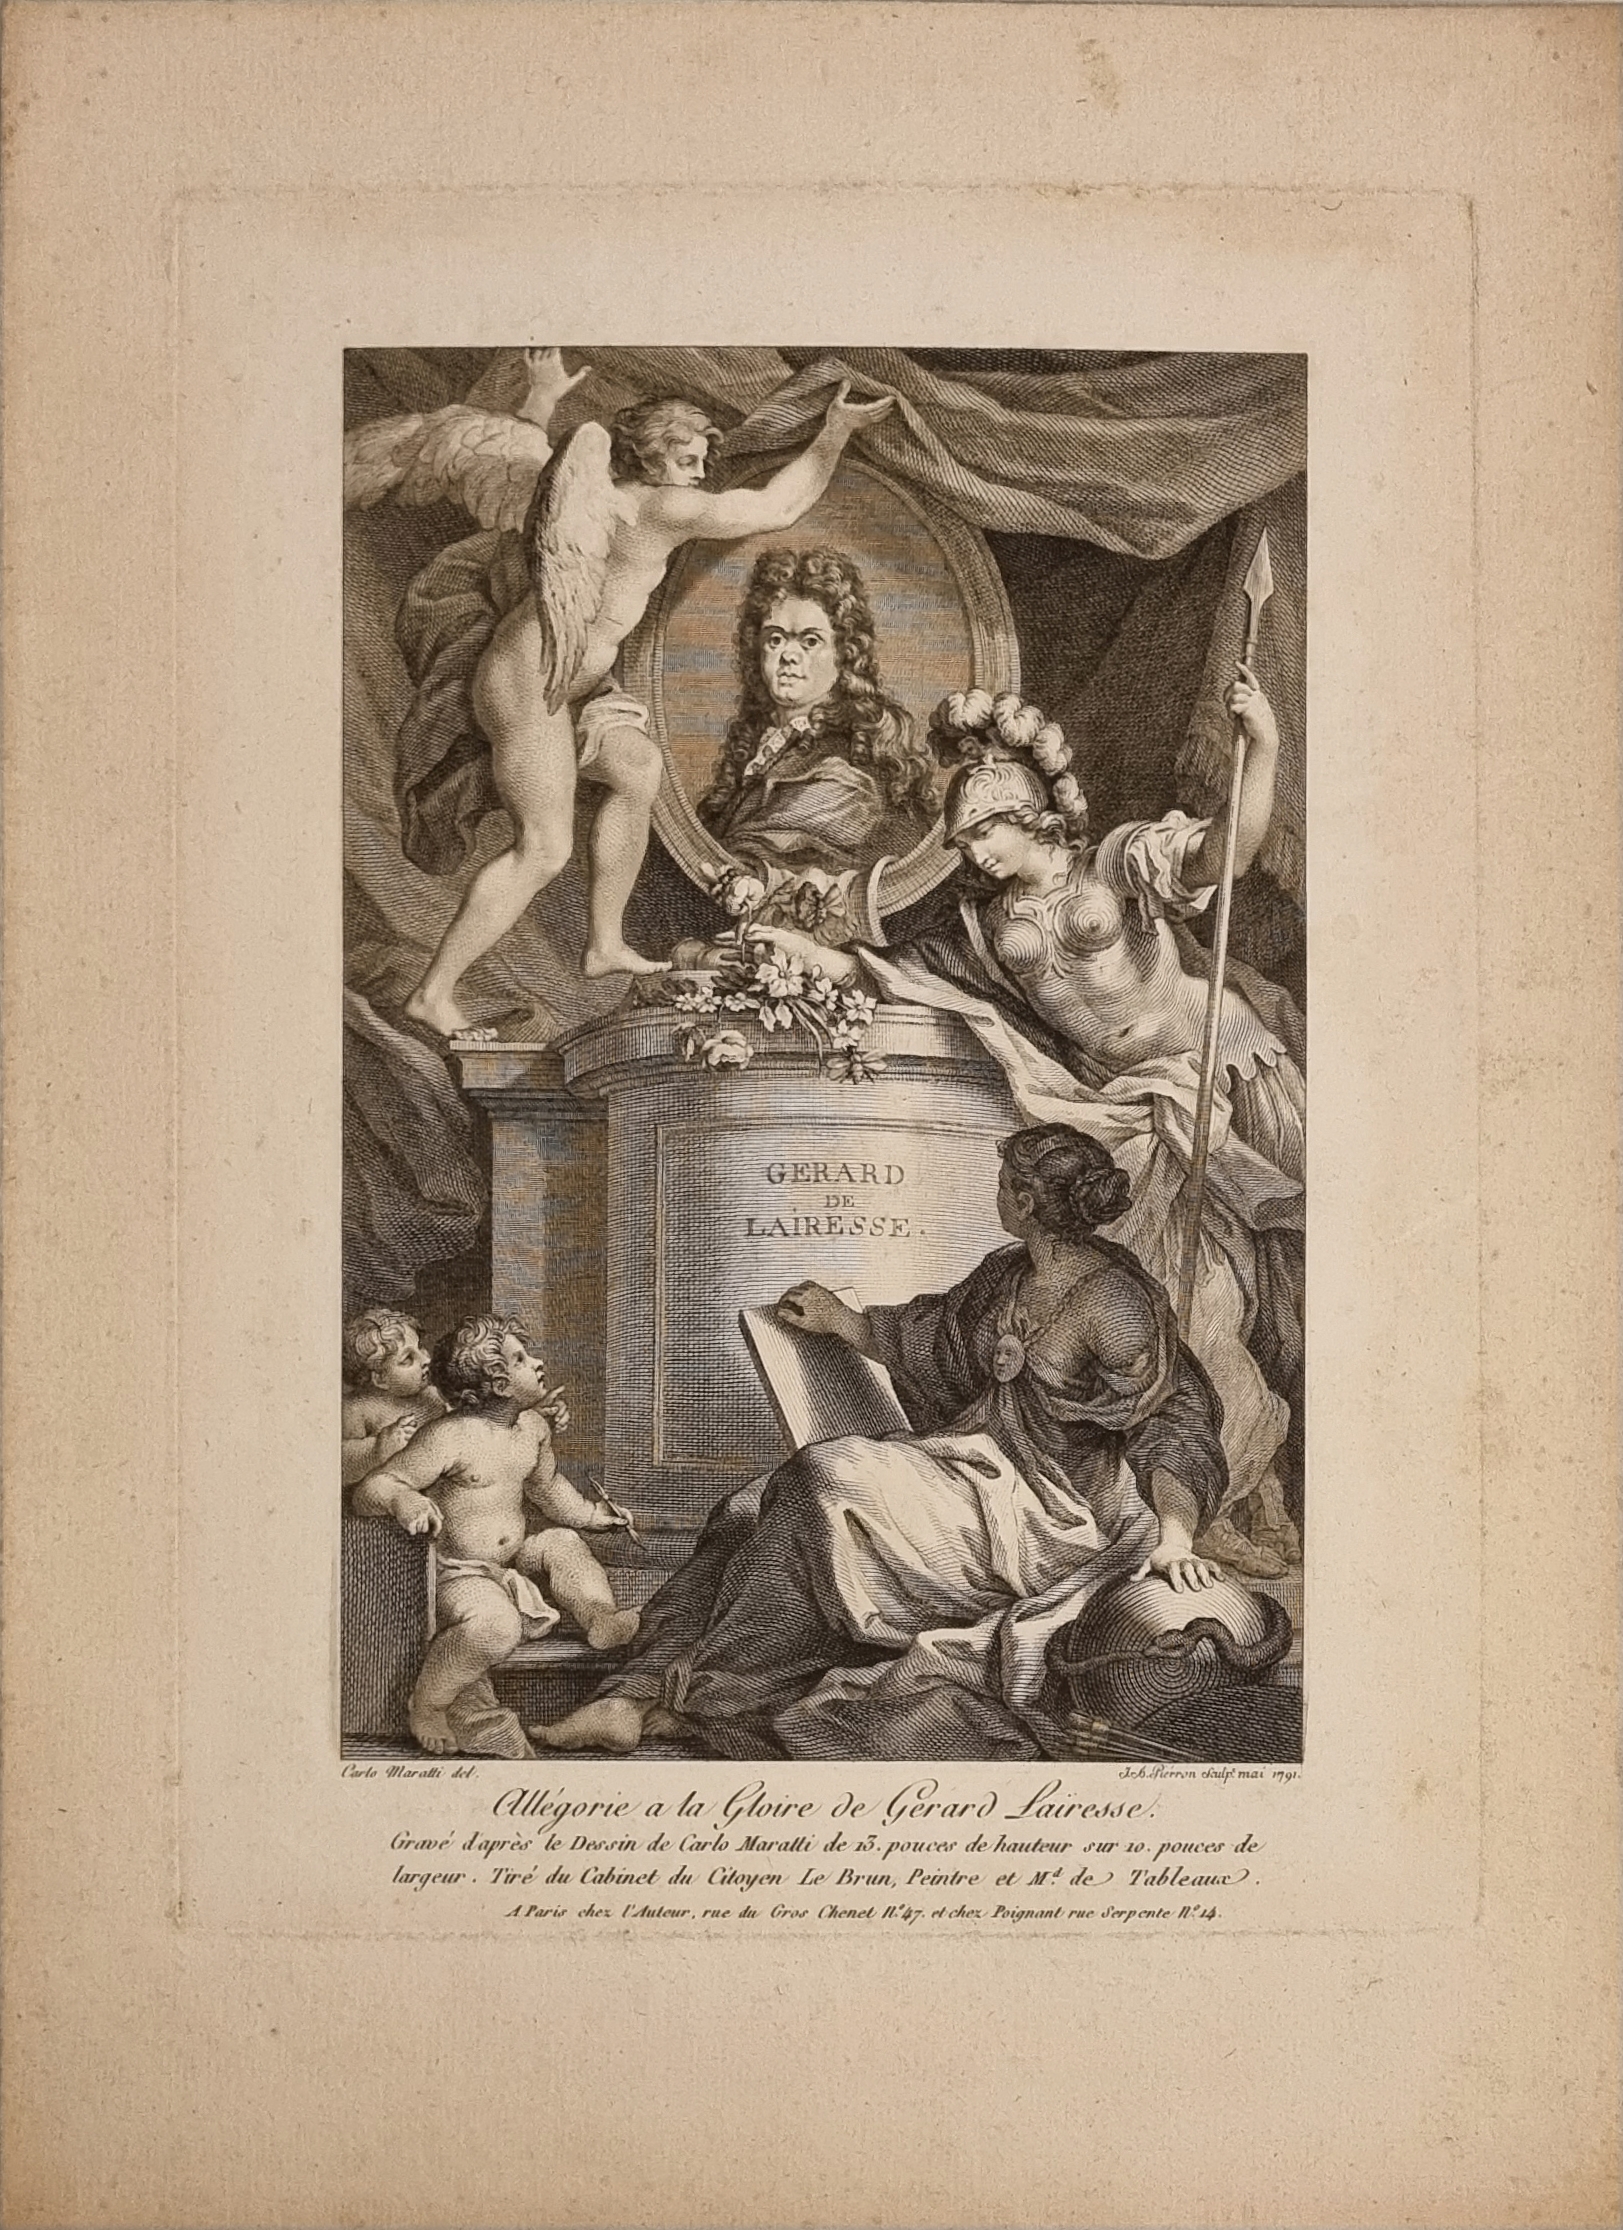 [Antique print, engraving] Allegory on the glory of Gerard de Lairesse [Allegorie a la Gloire de Gerard Lairesse]/Allegorie over Gerard de Lairesse, published 1791.